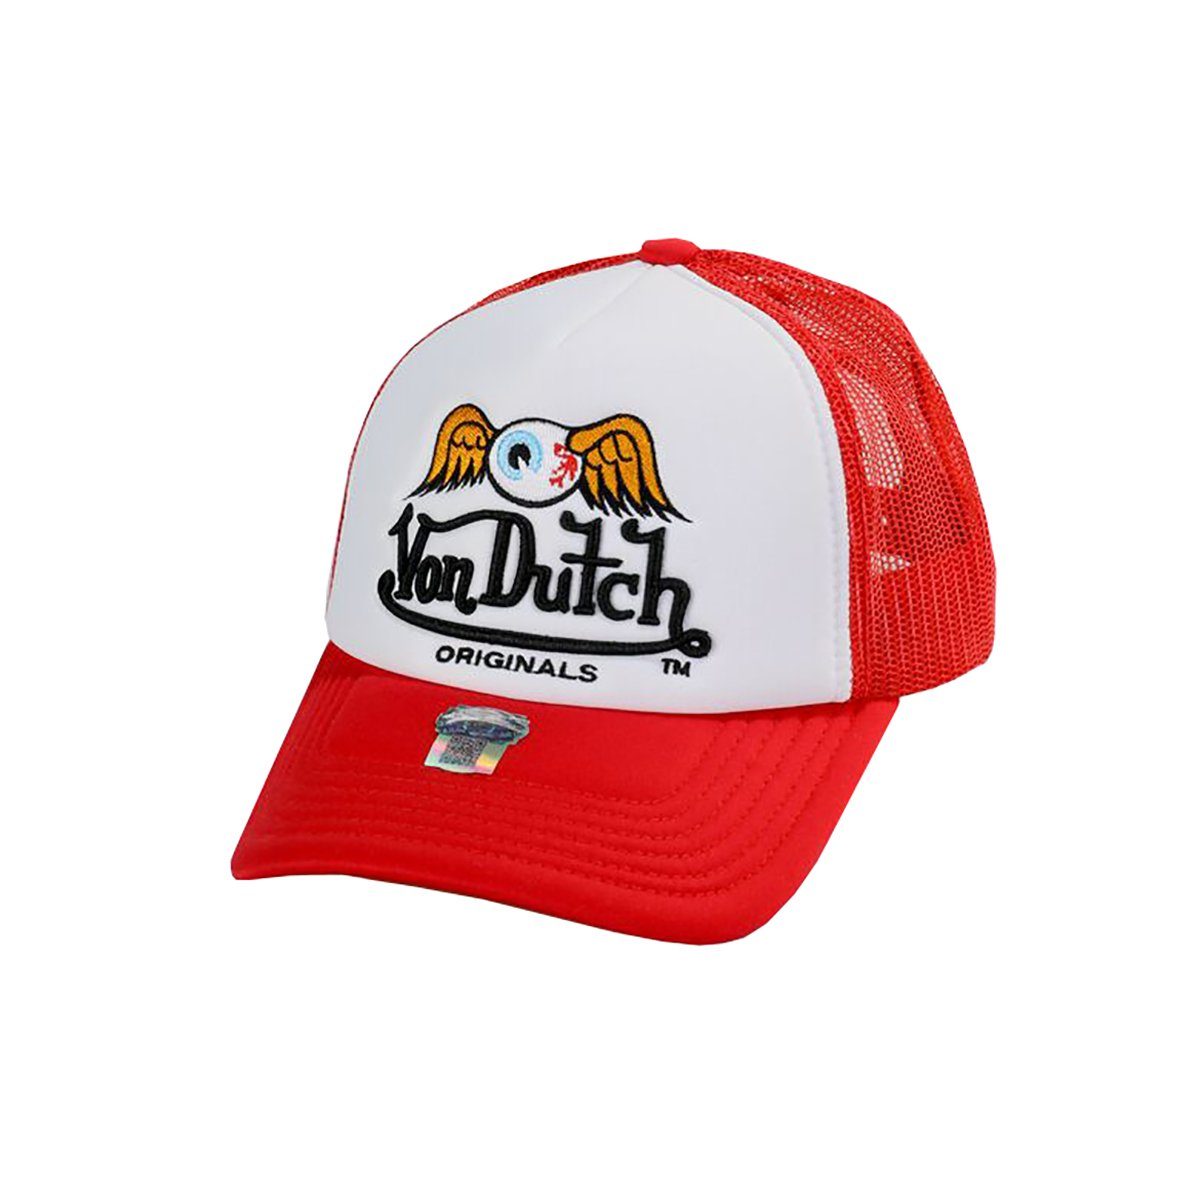 Dutch Von Baker Trucker Cap